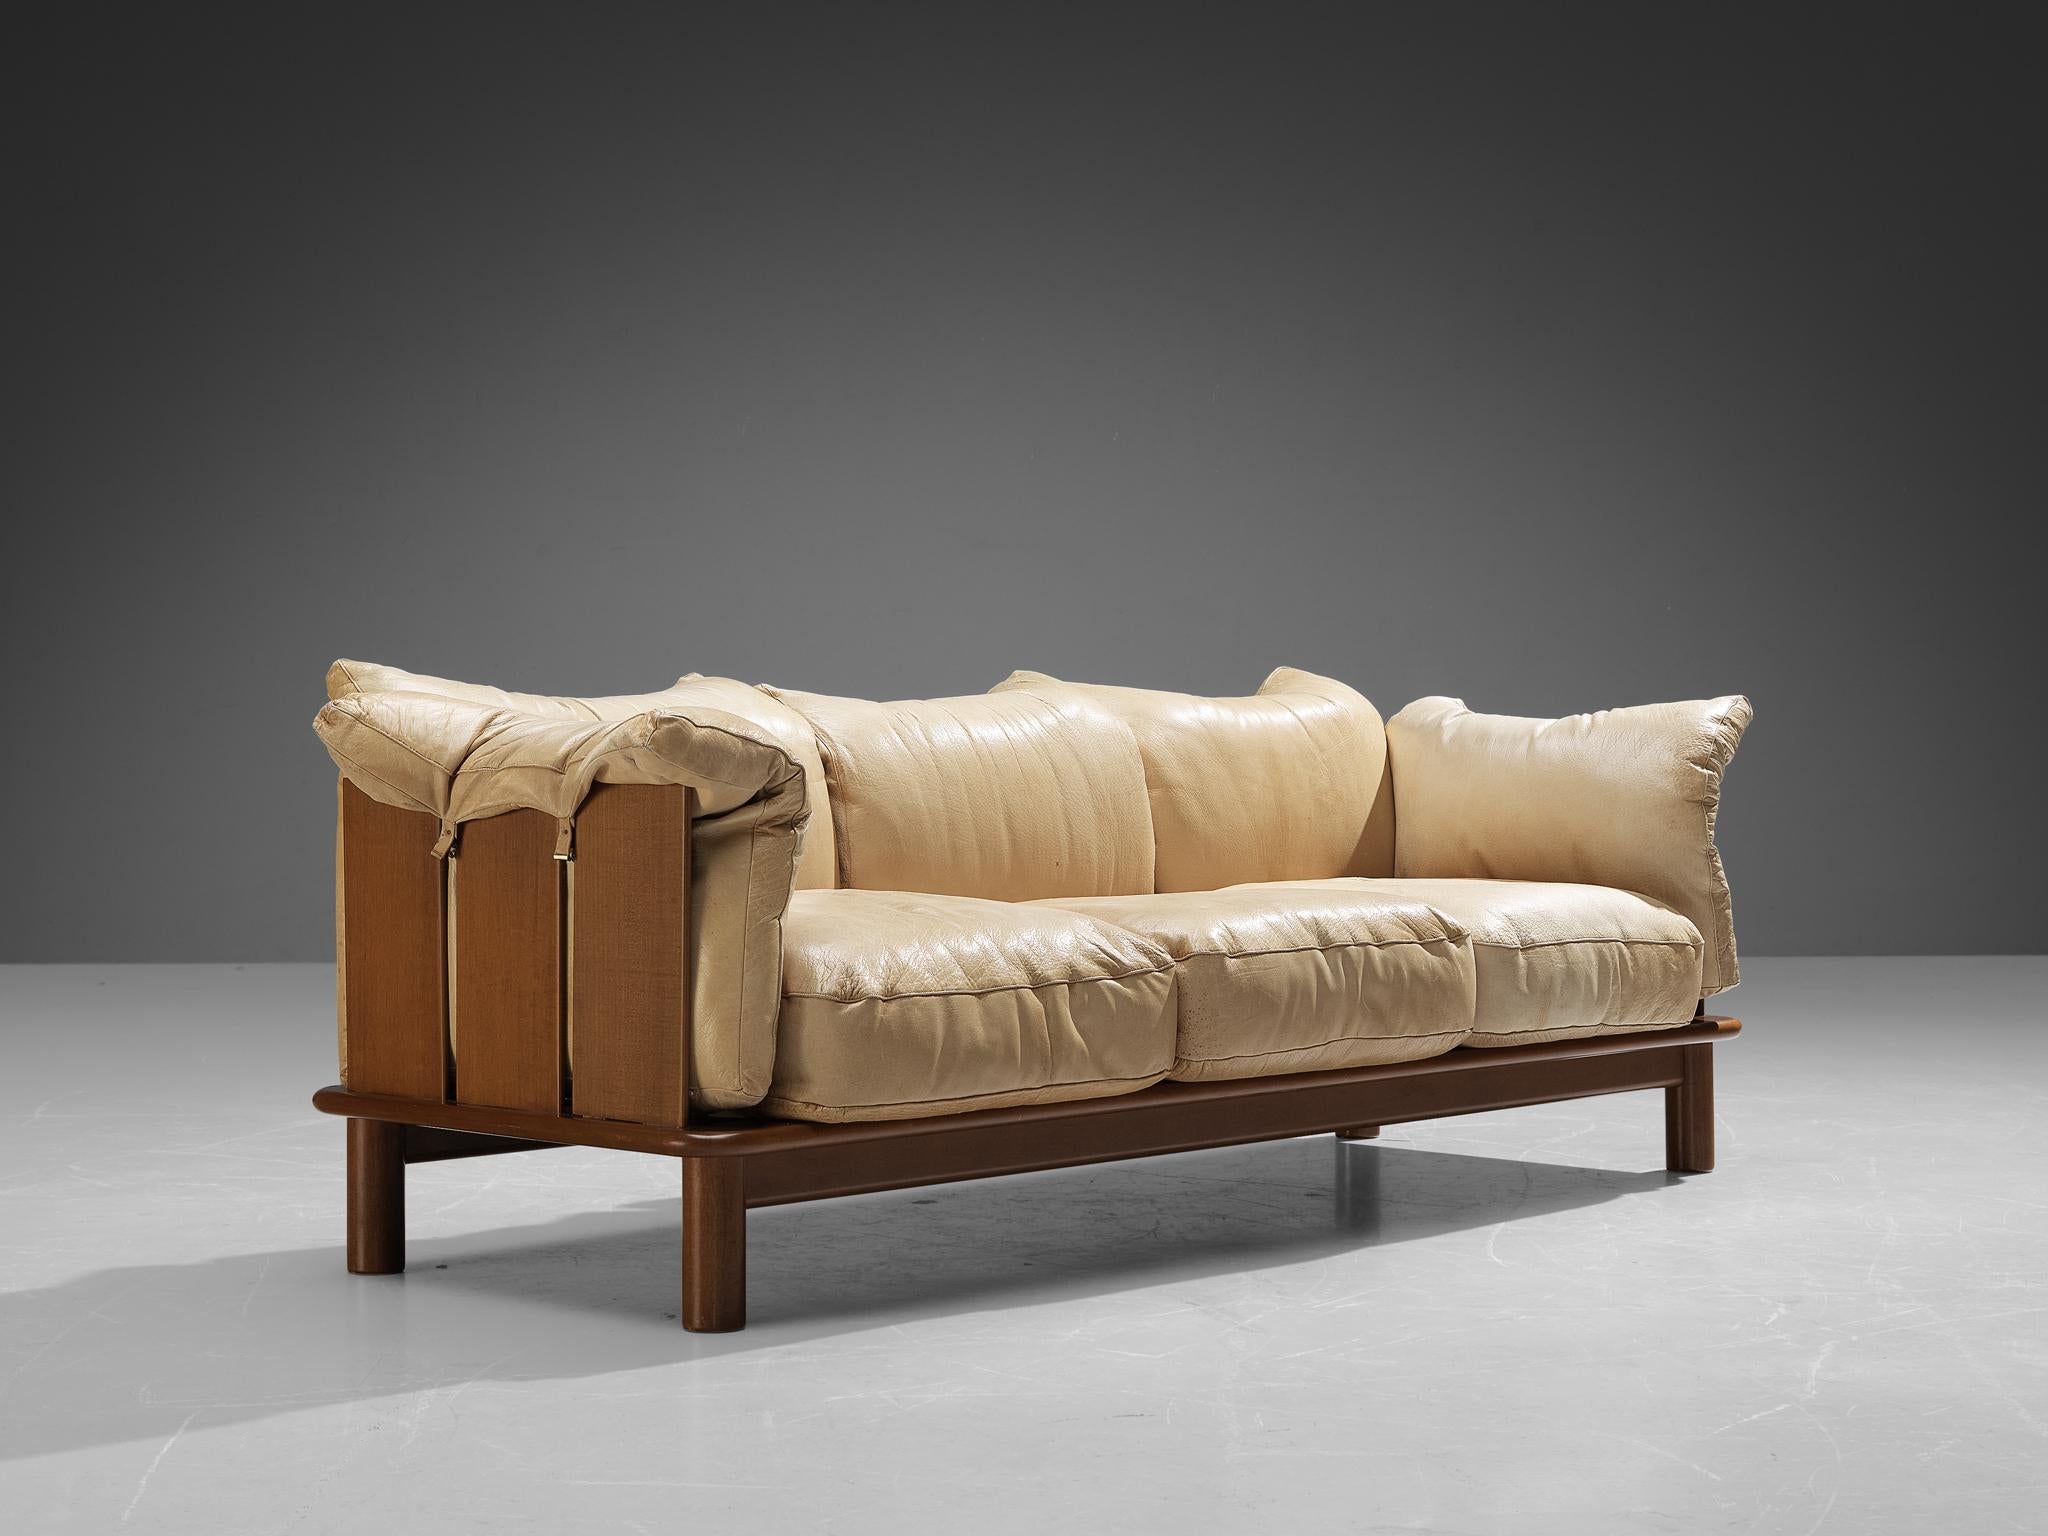 De Pas, D’Urbino & Lomazzi for Poltronova 'PITTI' Sofa in Beige Leather 2